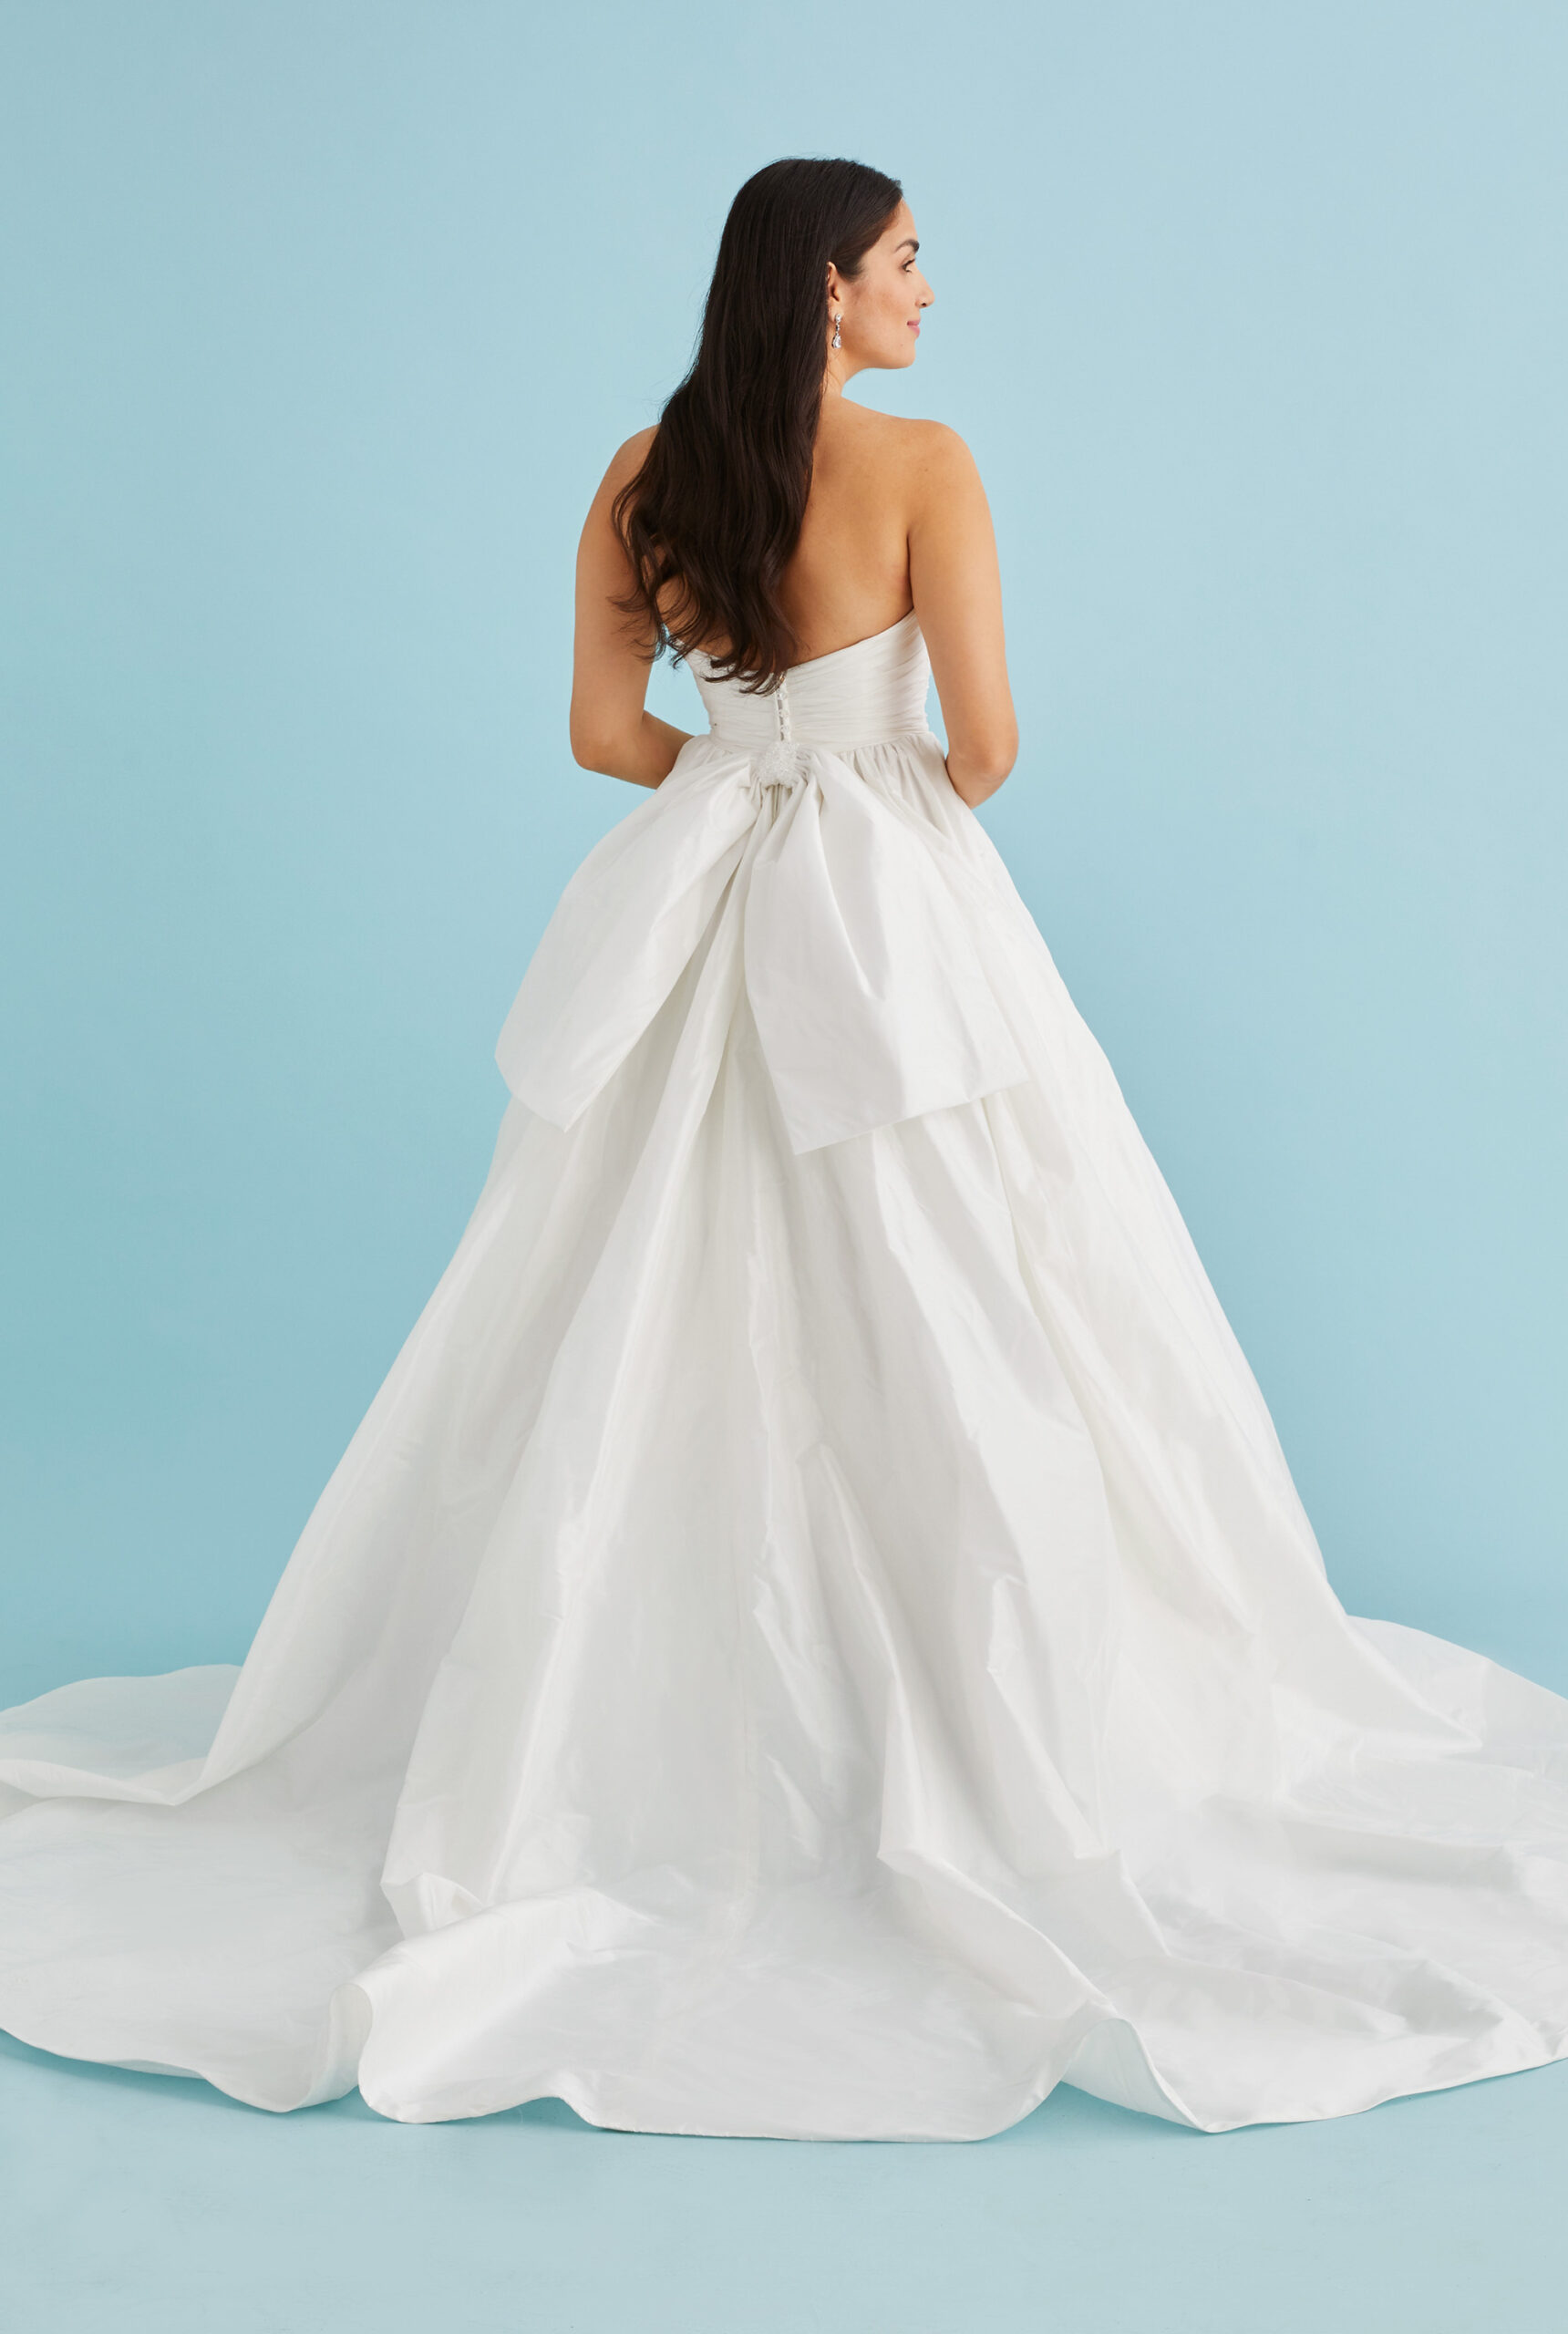 Aspen Wedding Gown